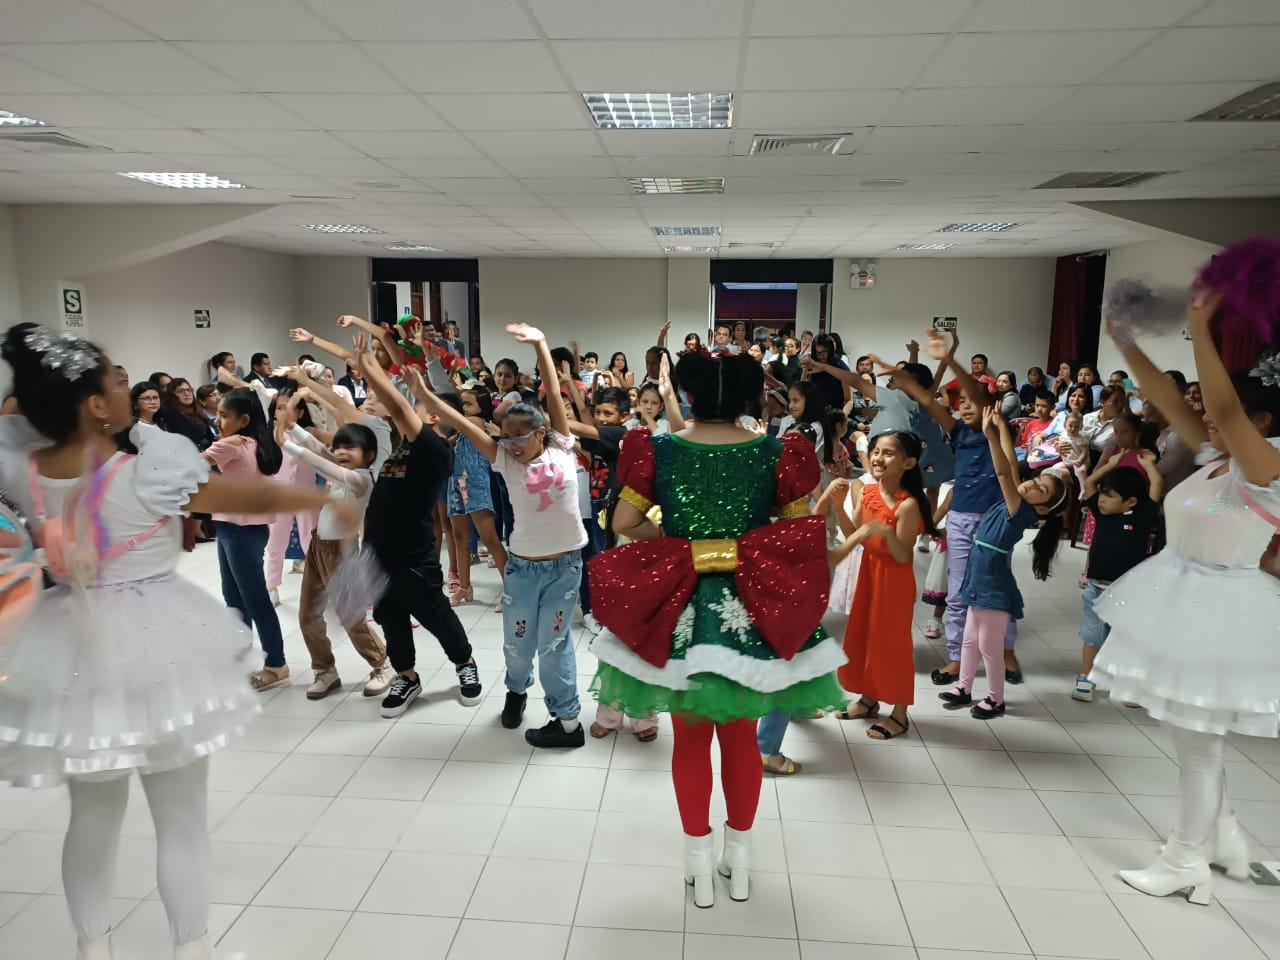 Corte Superior de Justicia de San Martín brindó alegría al niño judicial en navidad